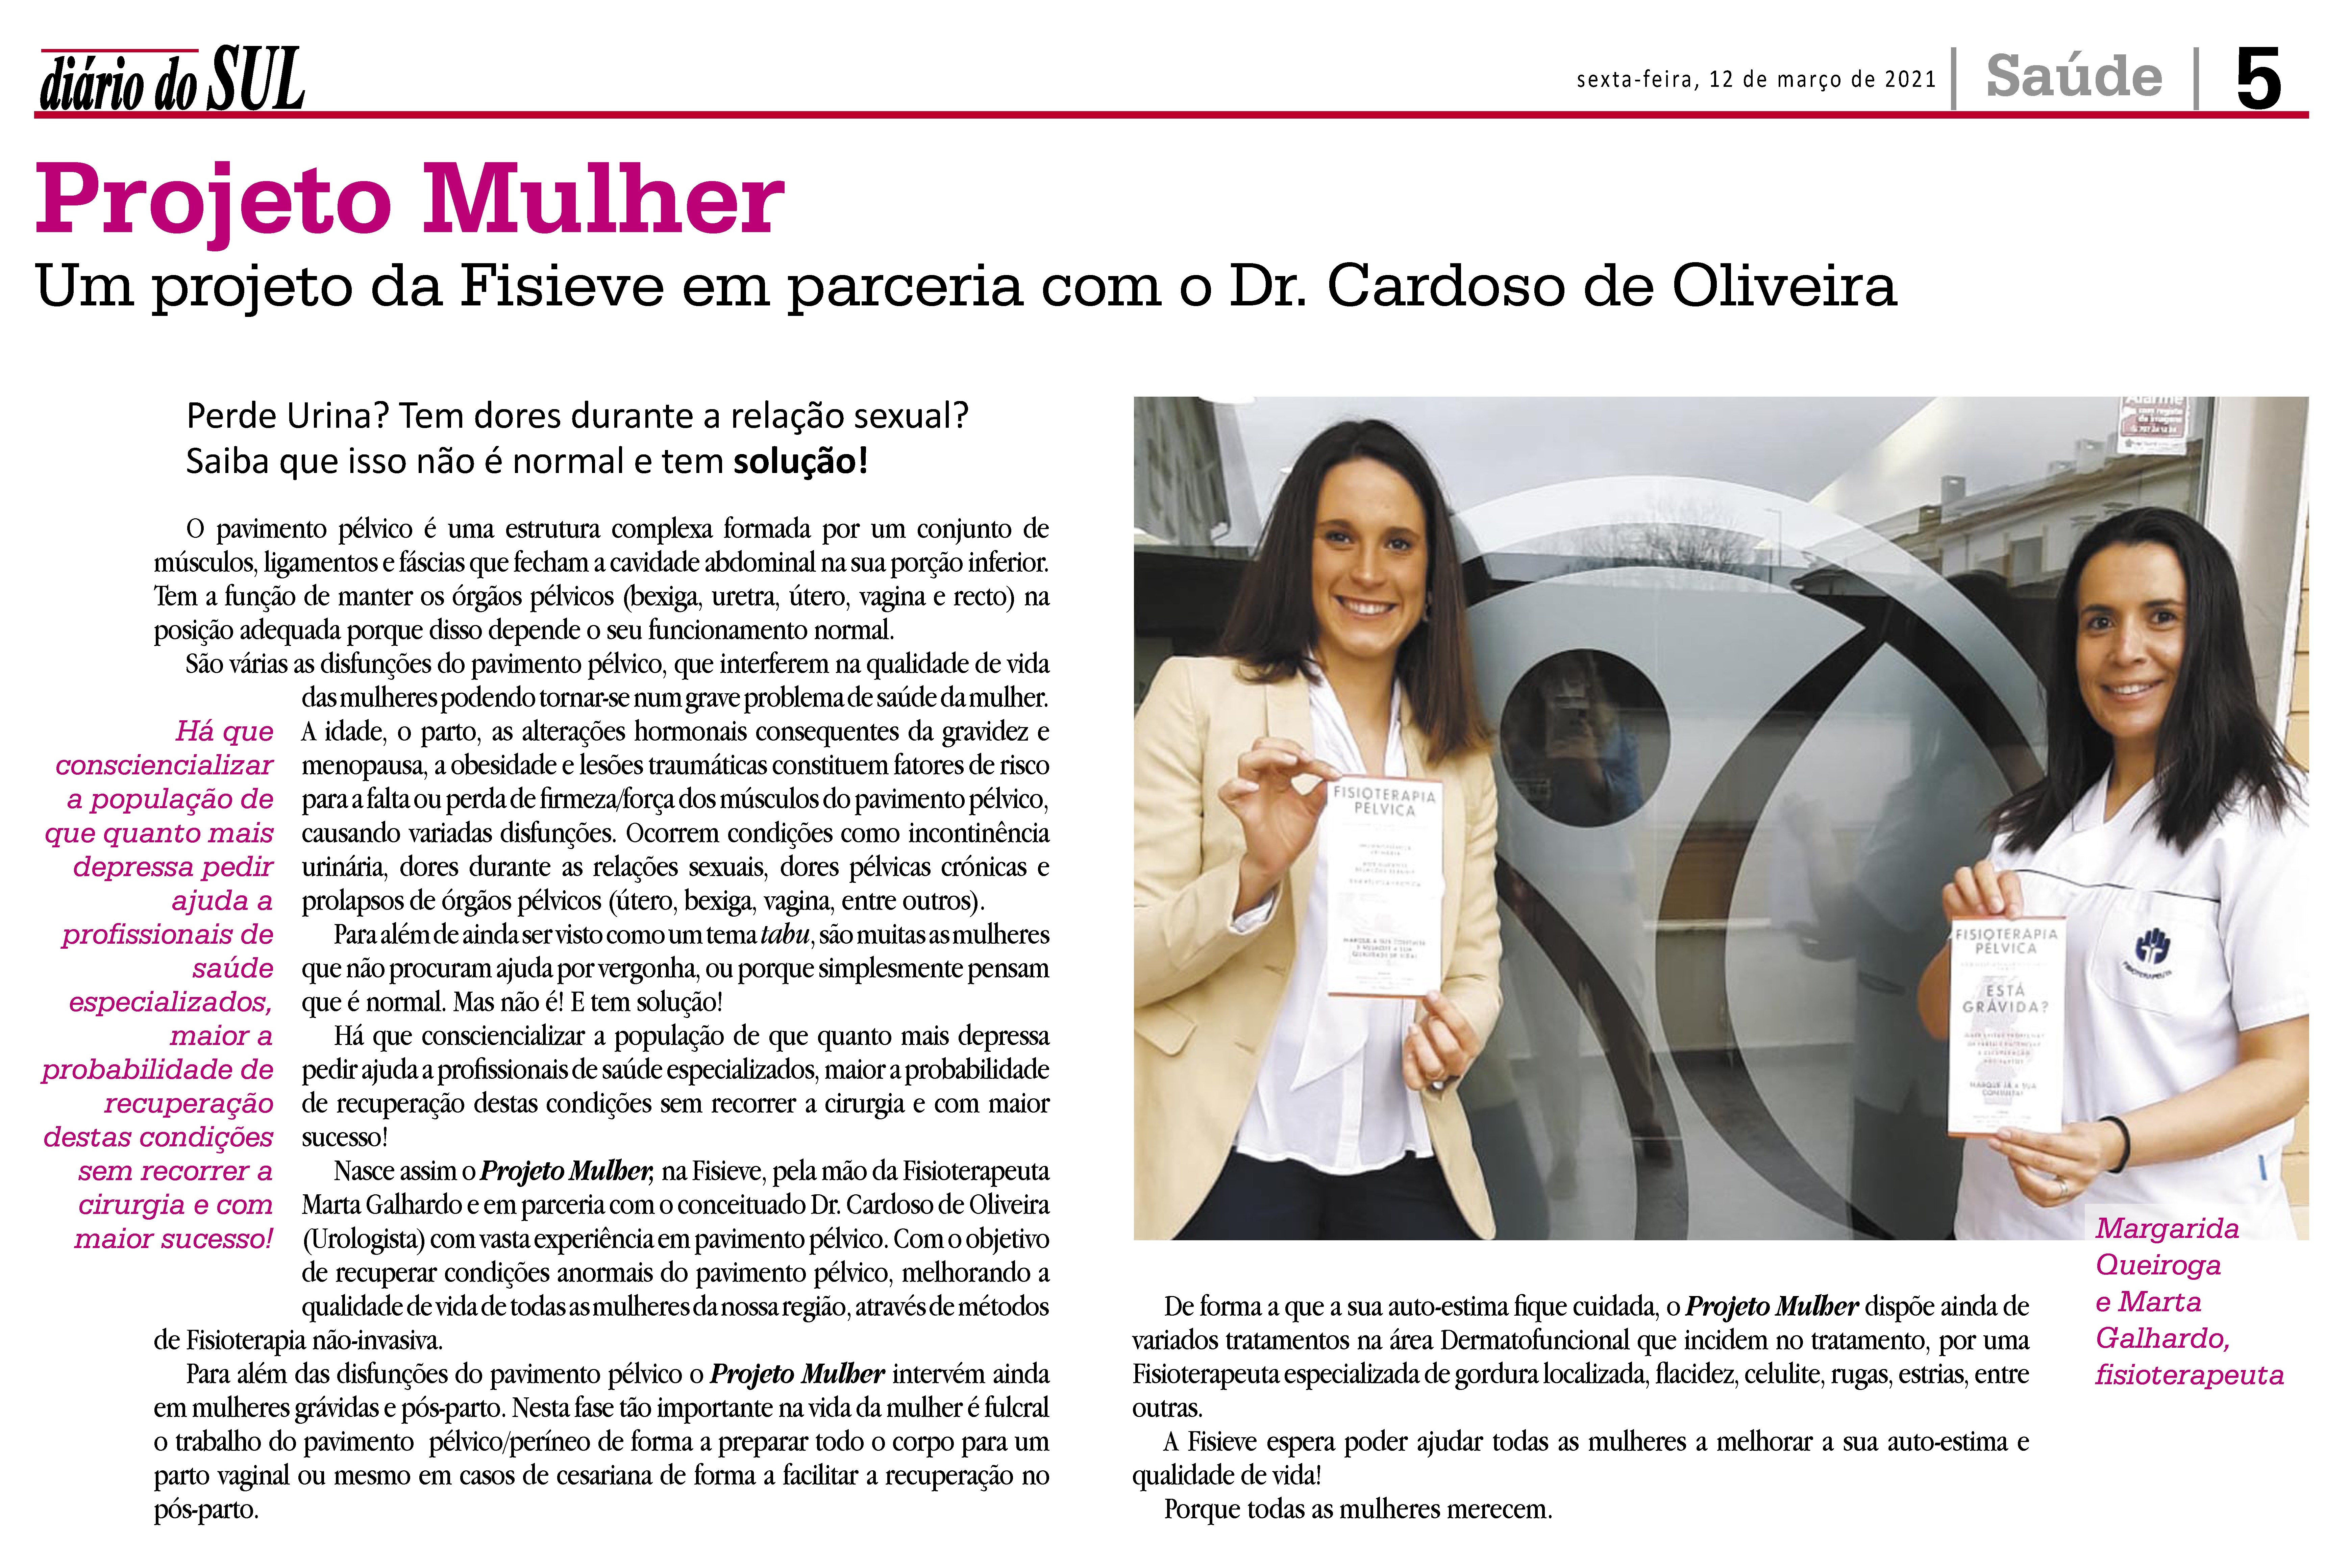 Projecto Mulher - Uma parceria entre a Fisieve e o Dr. Cardoso de Oliveira